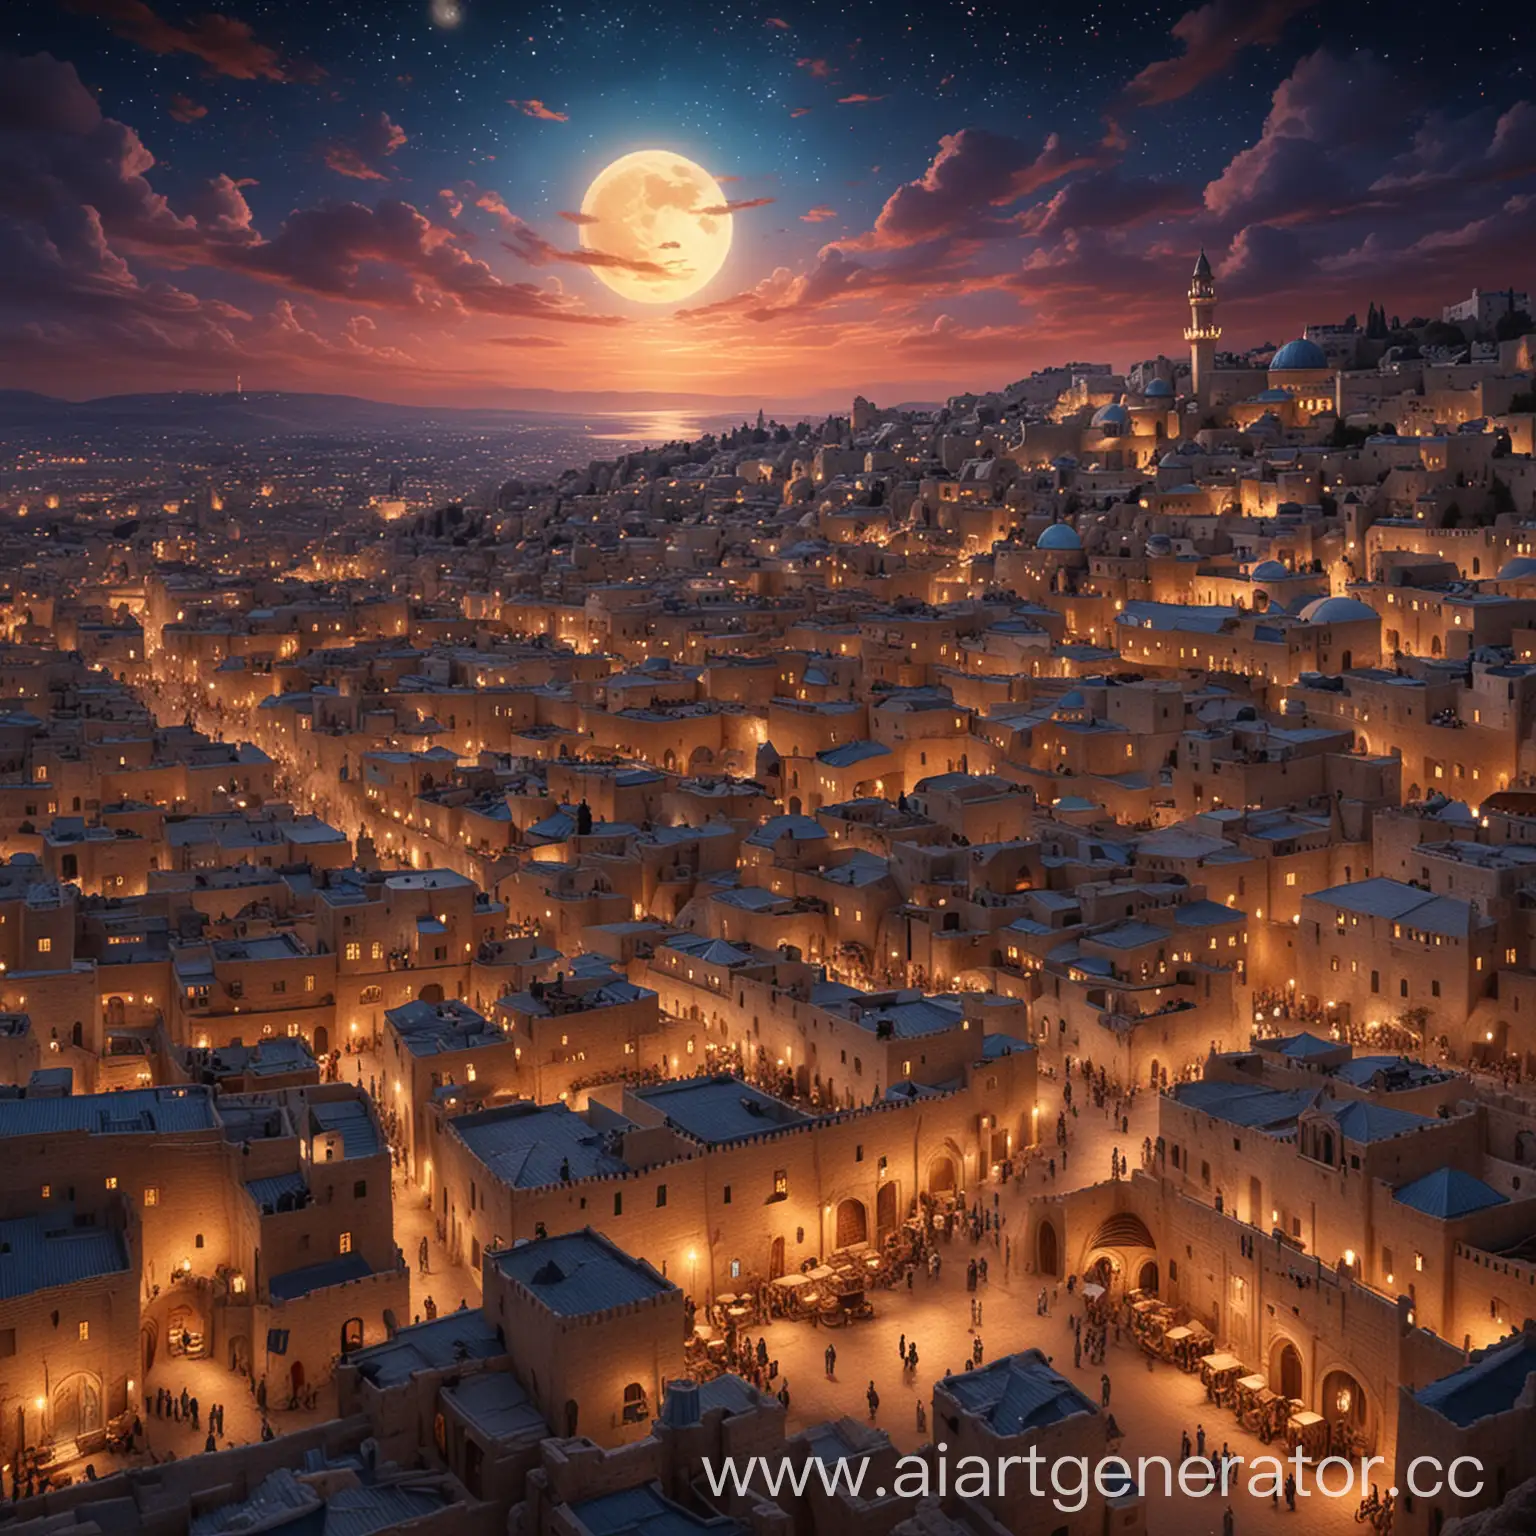 Мои мечты о Ночном Иерусалиме в стиле Уолт Диснея лампа Алладина